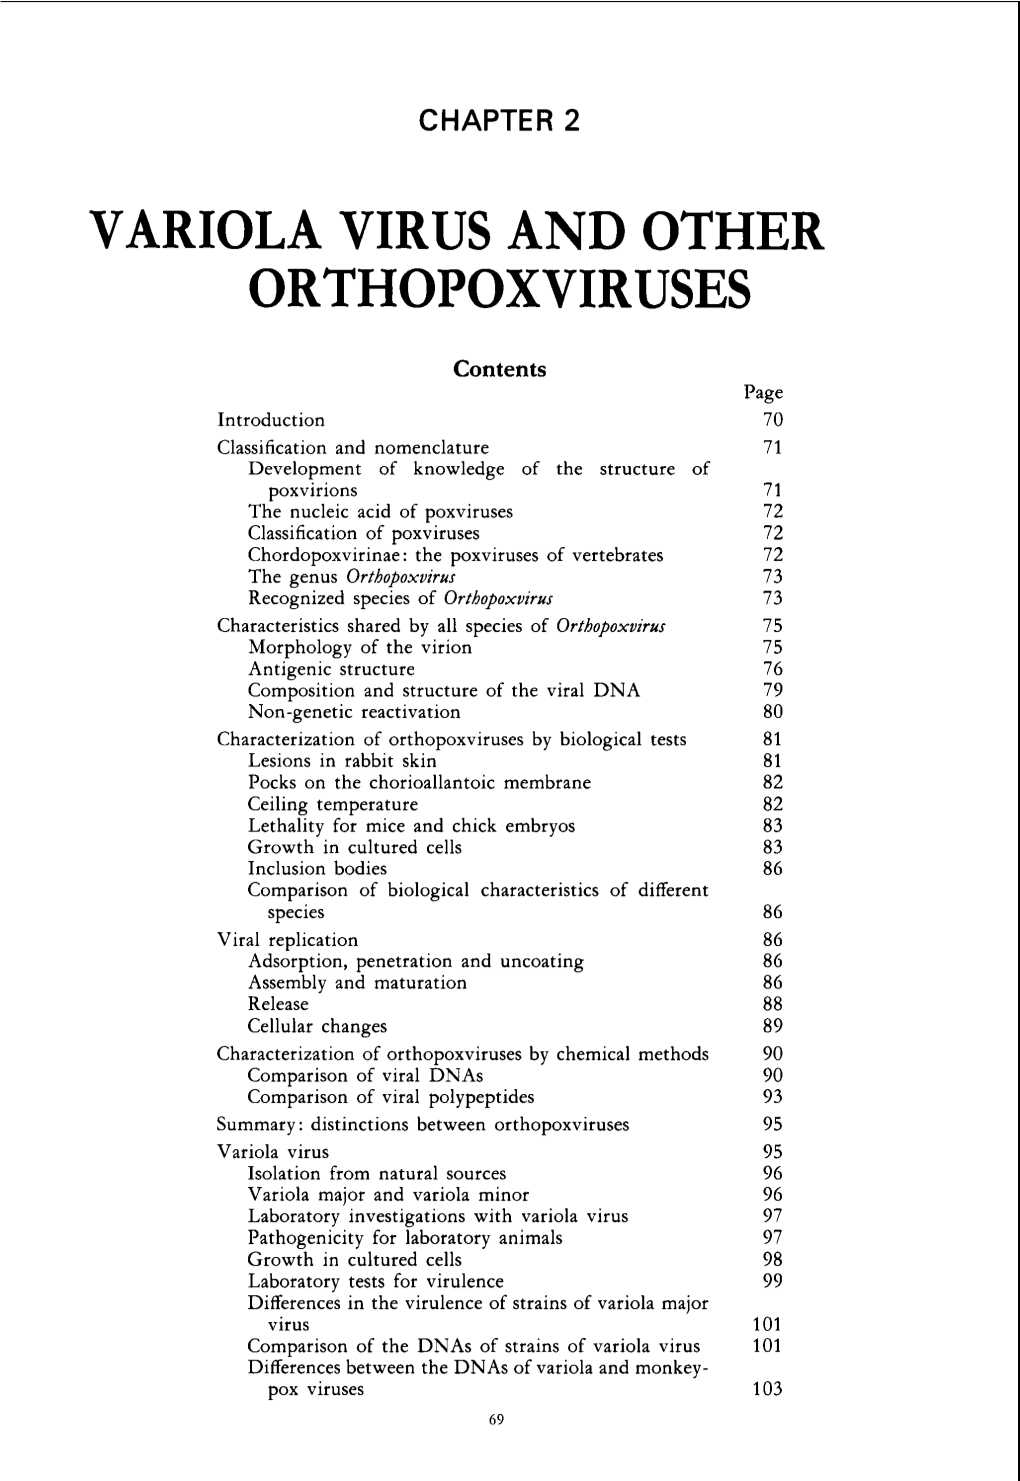 Variola Virus and Orthopoxviruses